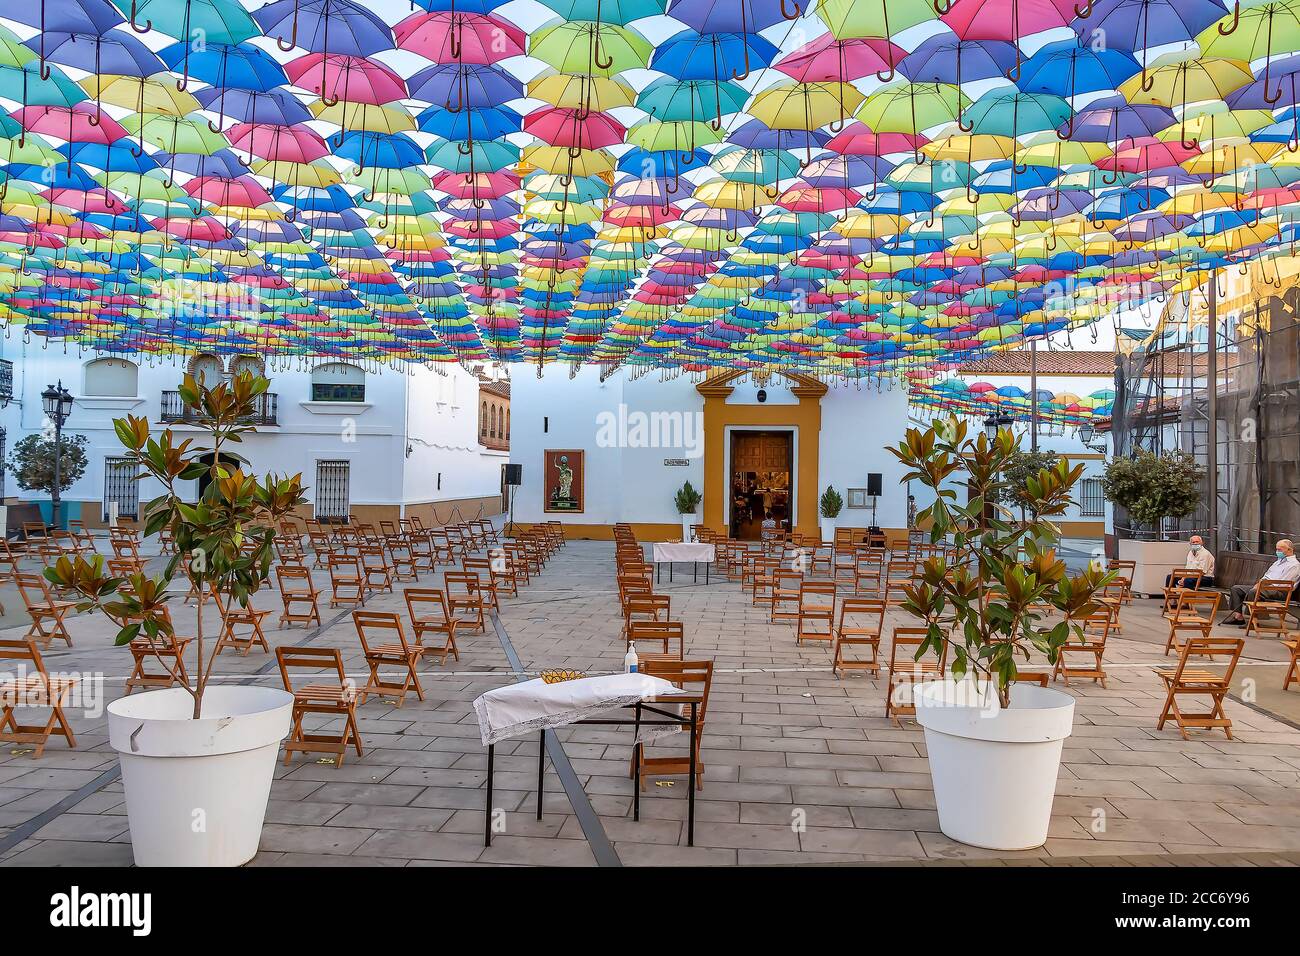 Huelva, Spagna - 15 agosto 2020; la piazza di fronte alla chiesa è preparata per una messa in strada con ombrelloni nel cielo nel villaggio di San B. Foto Stock